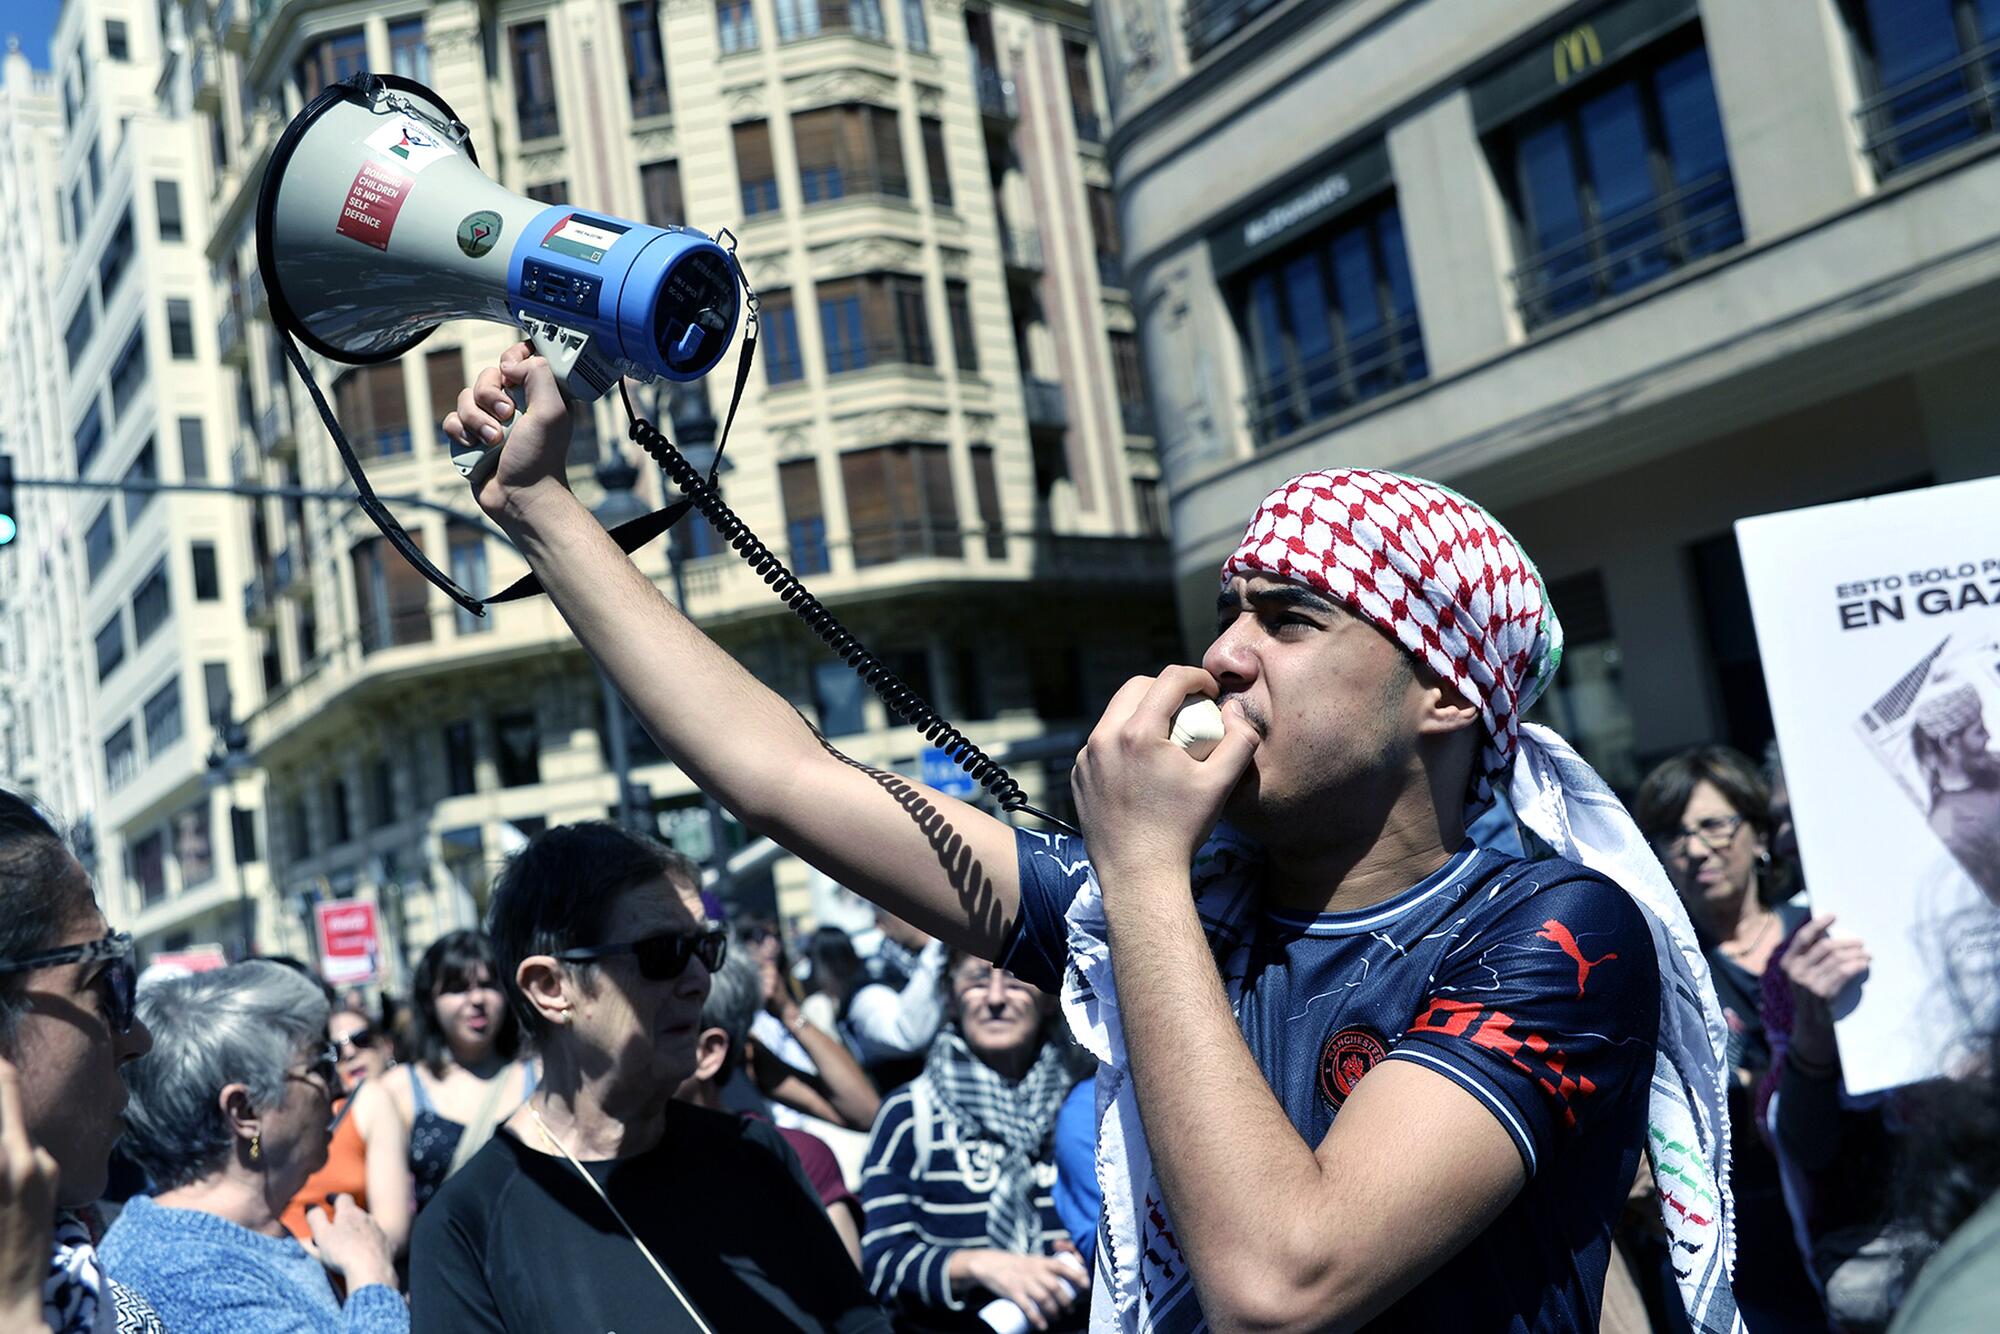 Manifestaciones País Valencià solidaridad con Palestina 20-21 abril  - 1